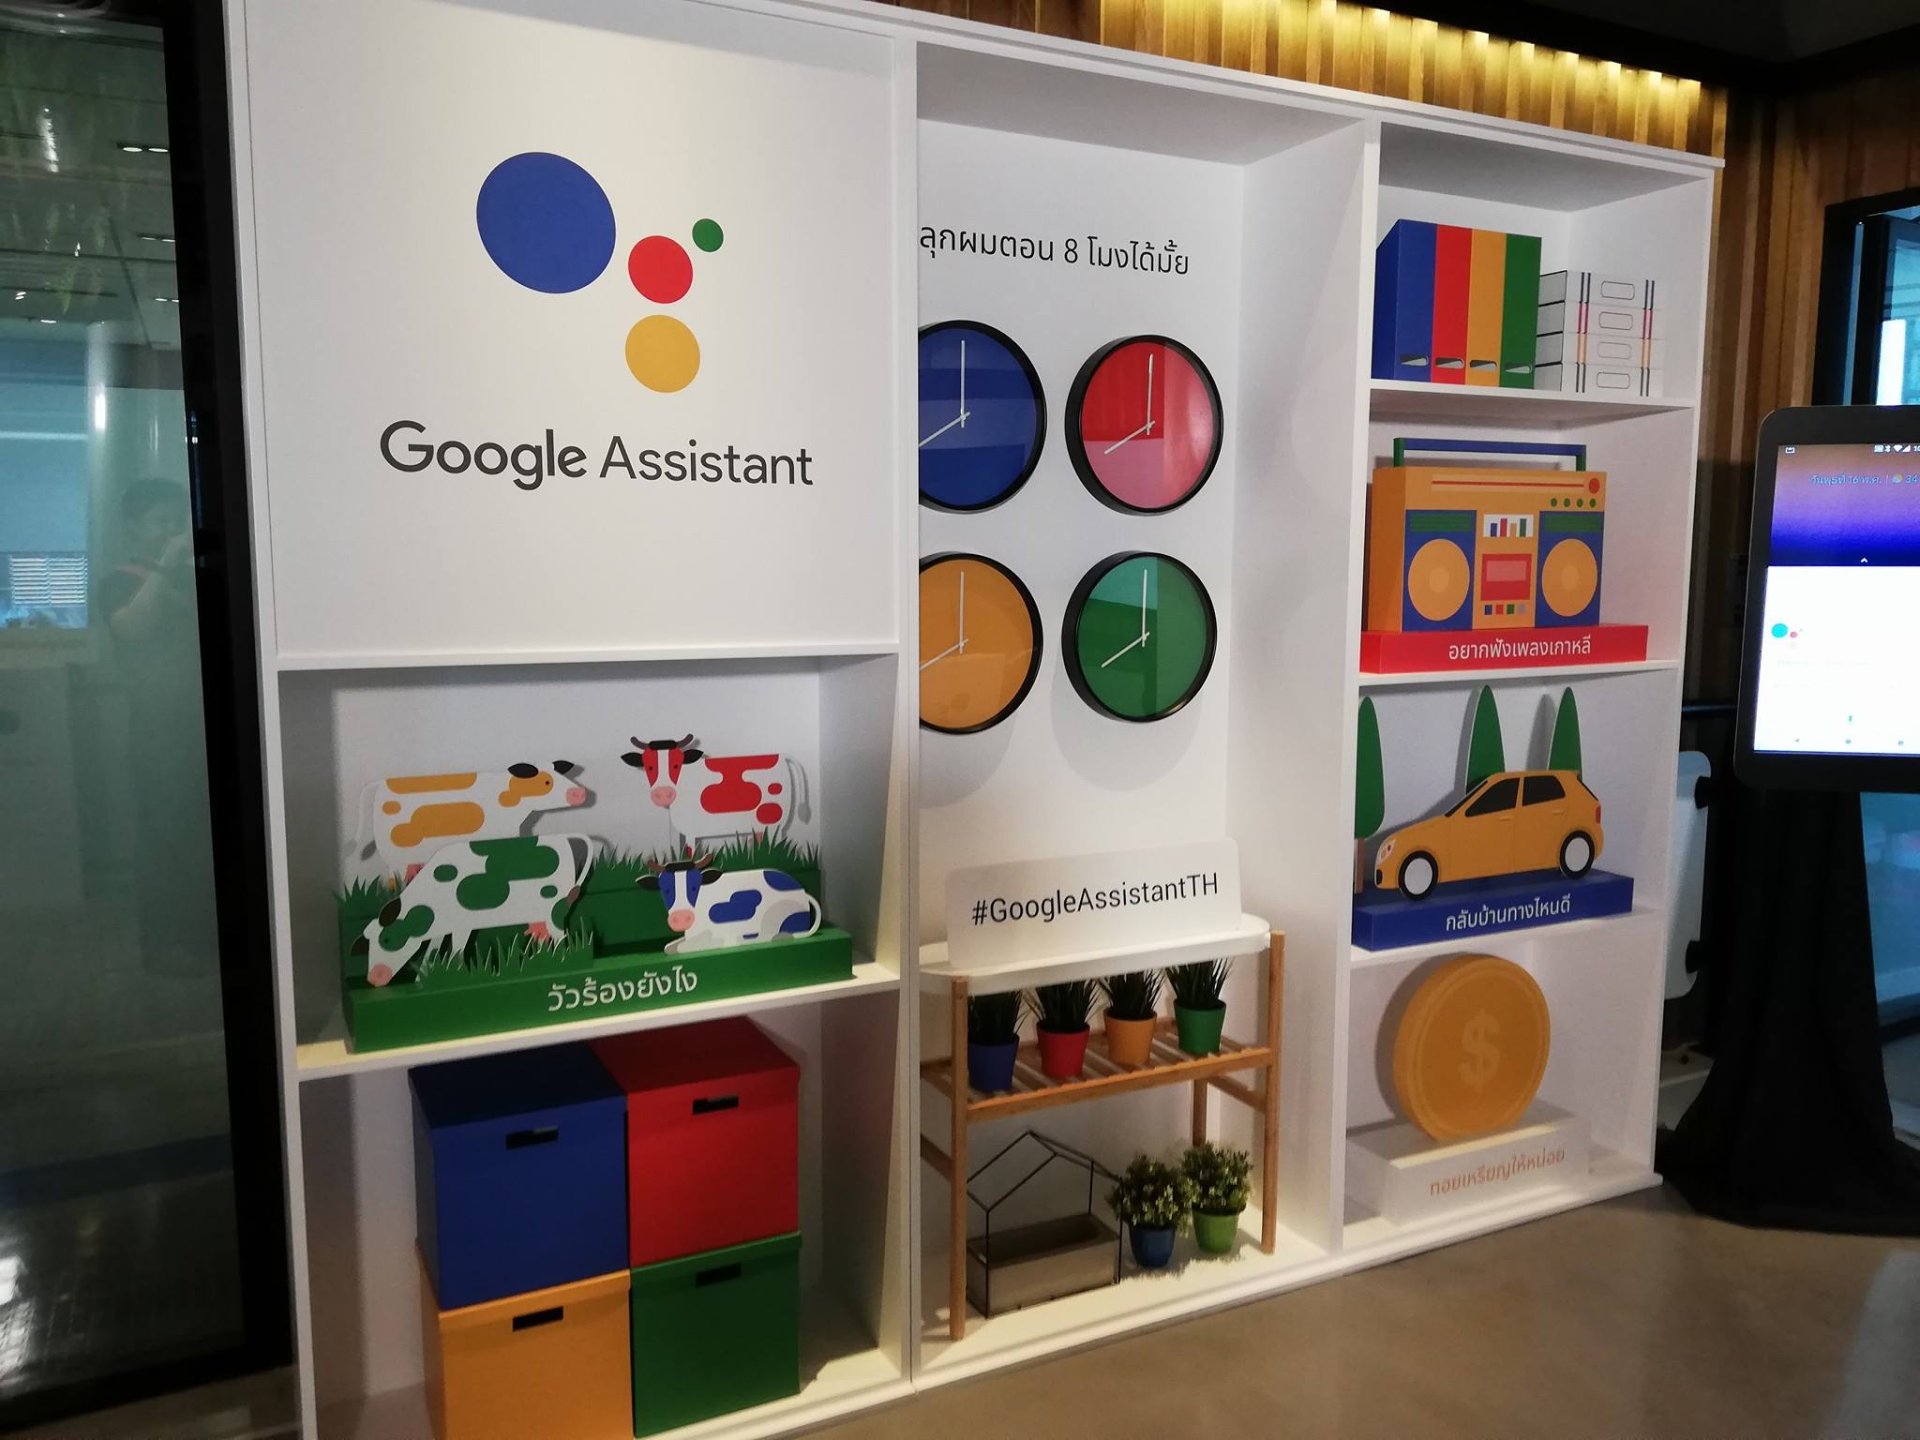 เปิดตัวแล้ว! Google Assistant ไทย พูดสั่งงานภาษาไทยในมือถือได้เลย